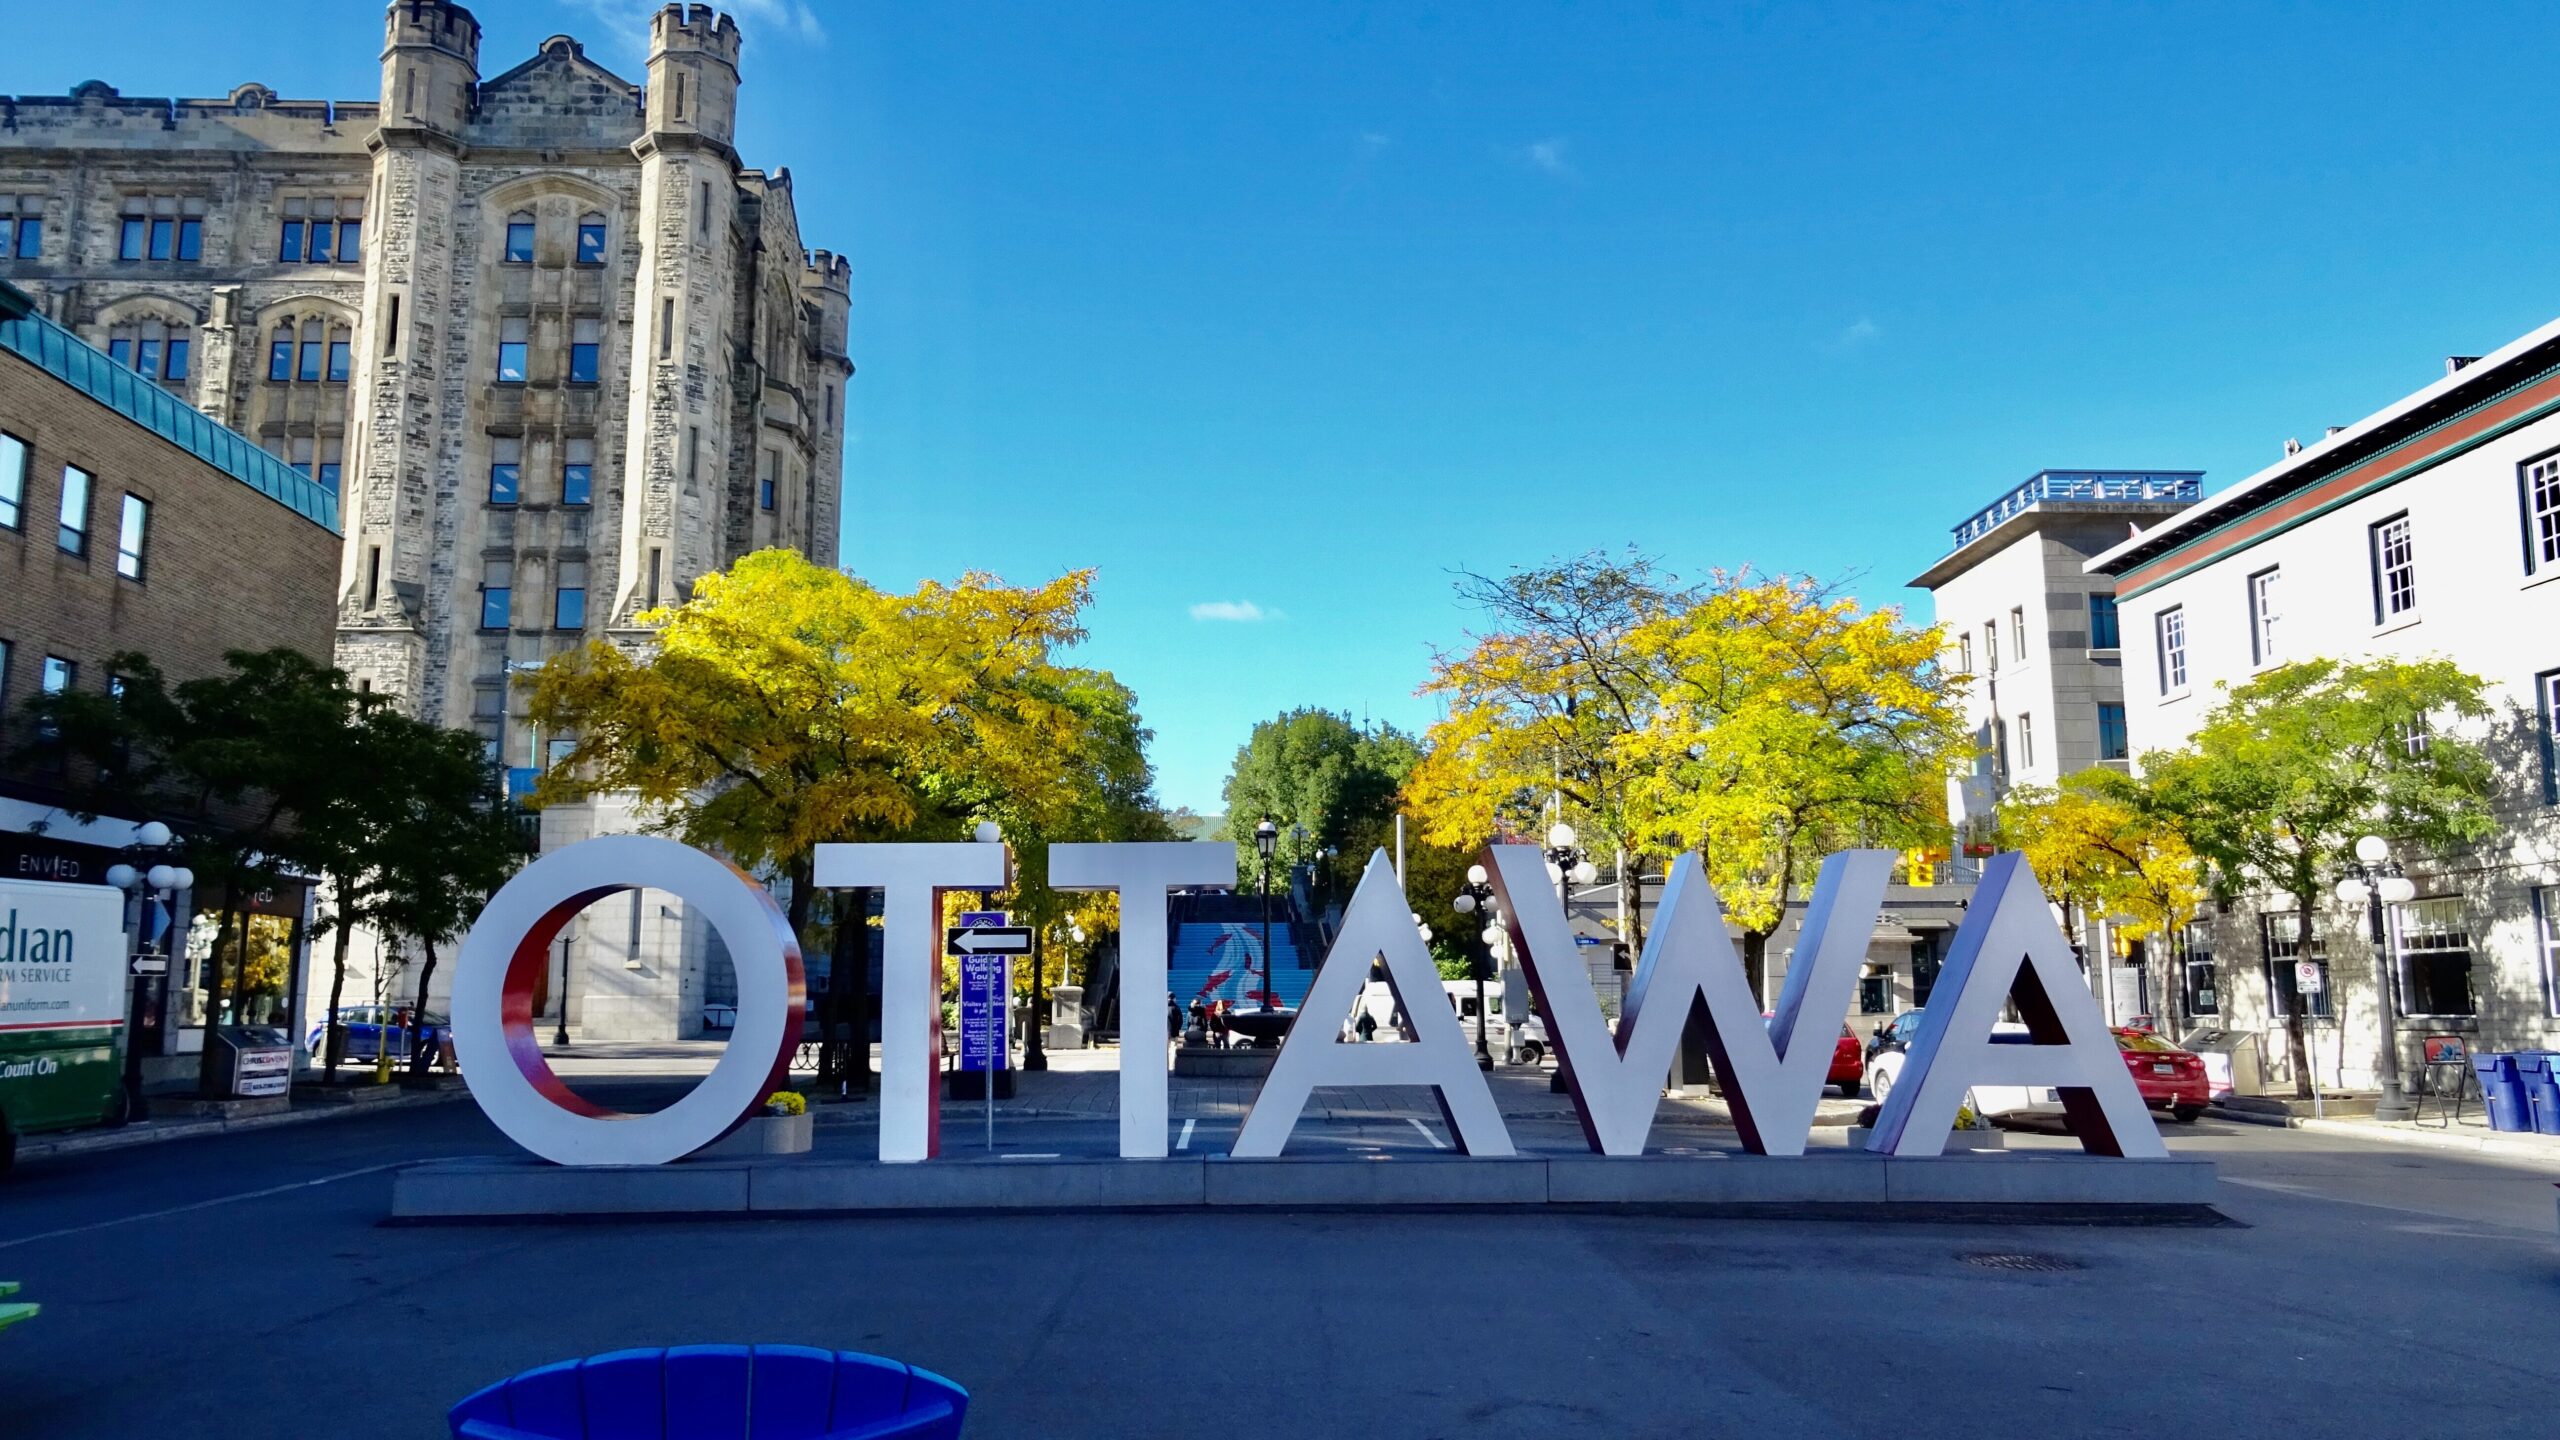 Panneau "Ottawa" au premier plan, bâtiments à l'arrière-plan